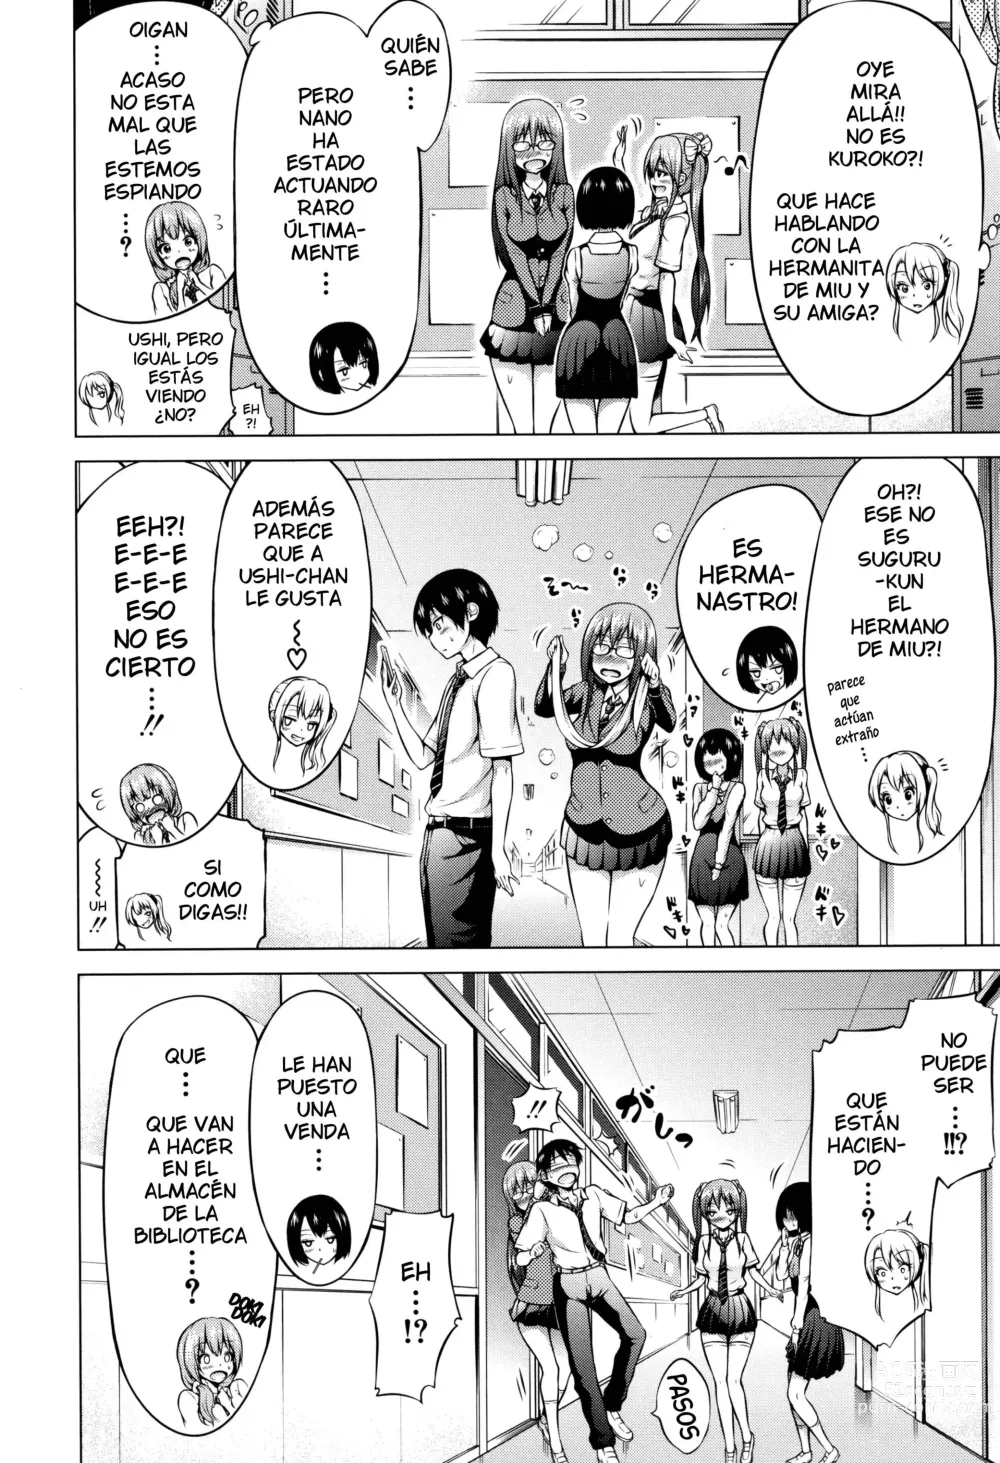 Page 4 of manga Hinagiku Virgin Lost Club e Youkoso Cap.3 - Bienvenidos al club de Hinagiku para perder la virginidad Cap.3 (decensored)